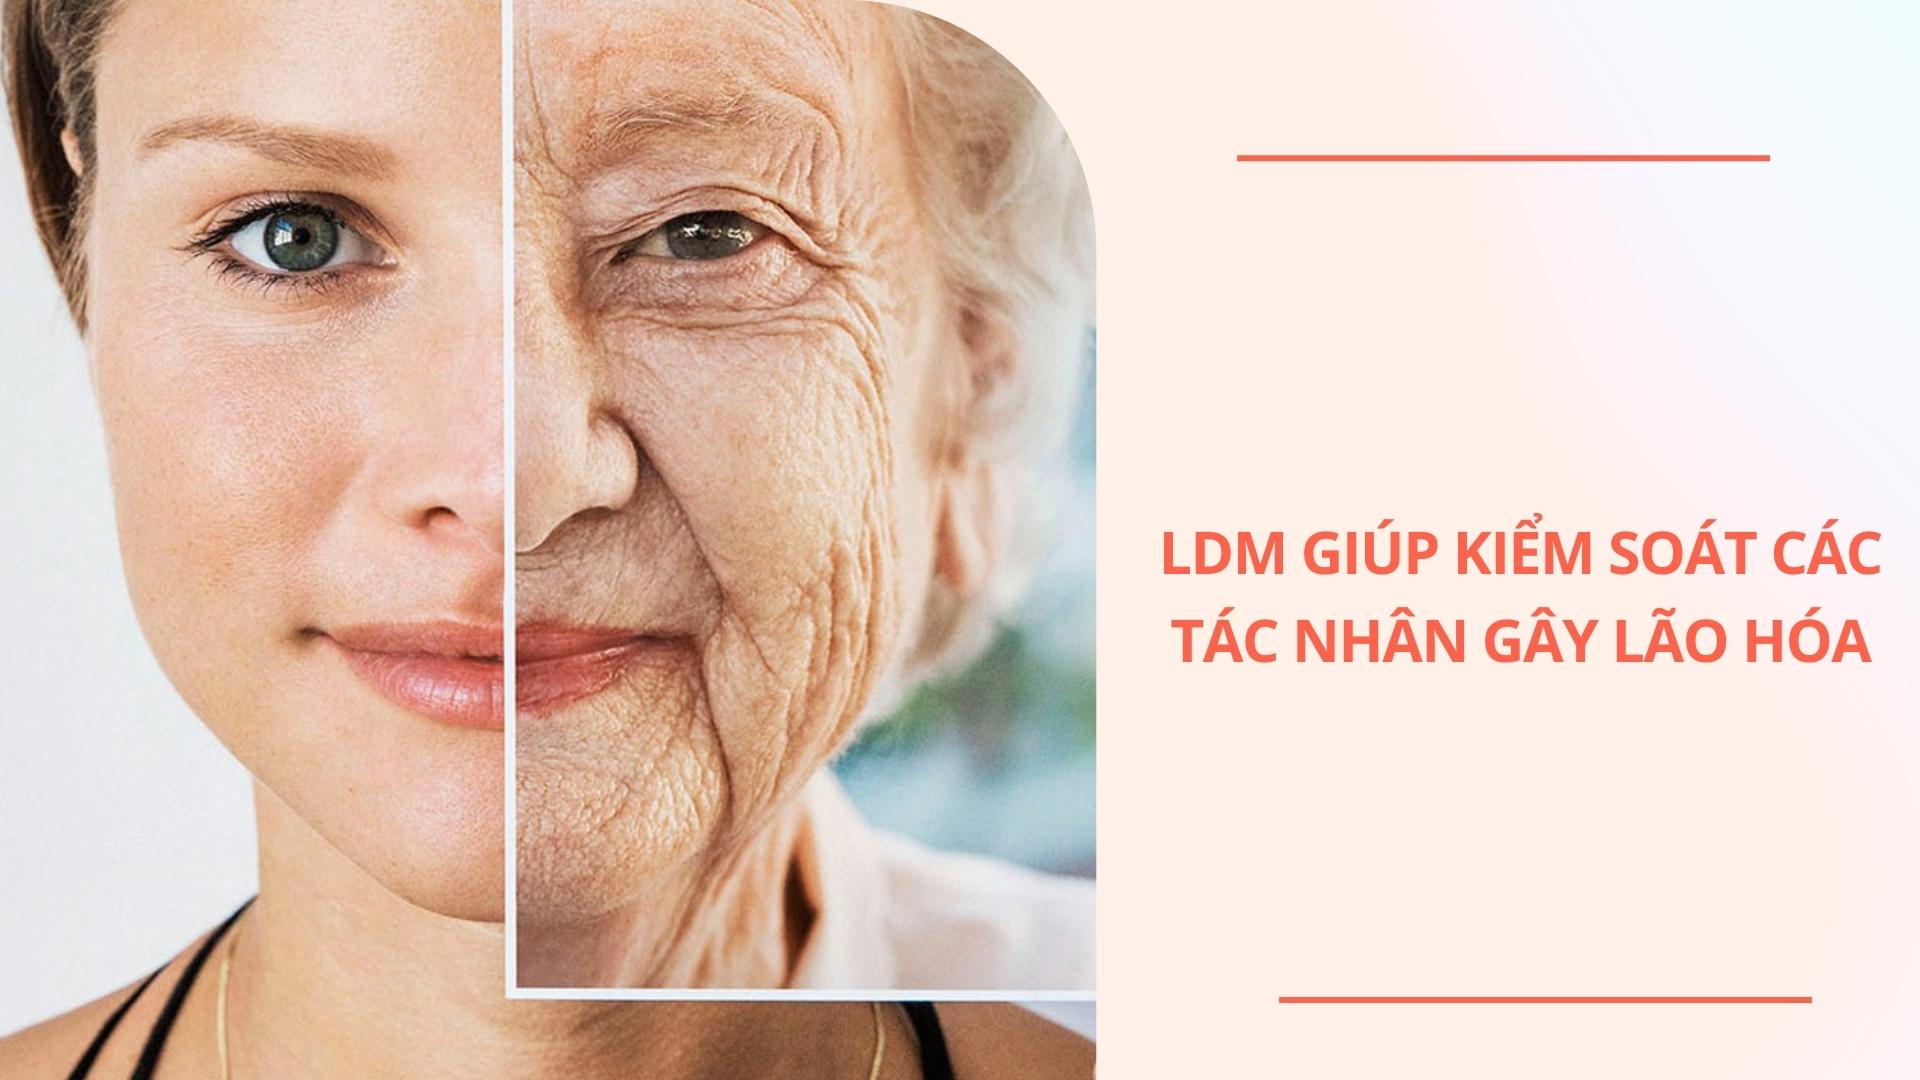 LDM giúp kiểm soát các tác nhân gây lão hóa da